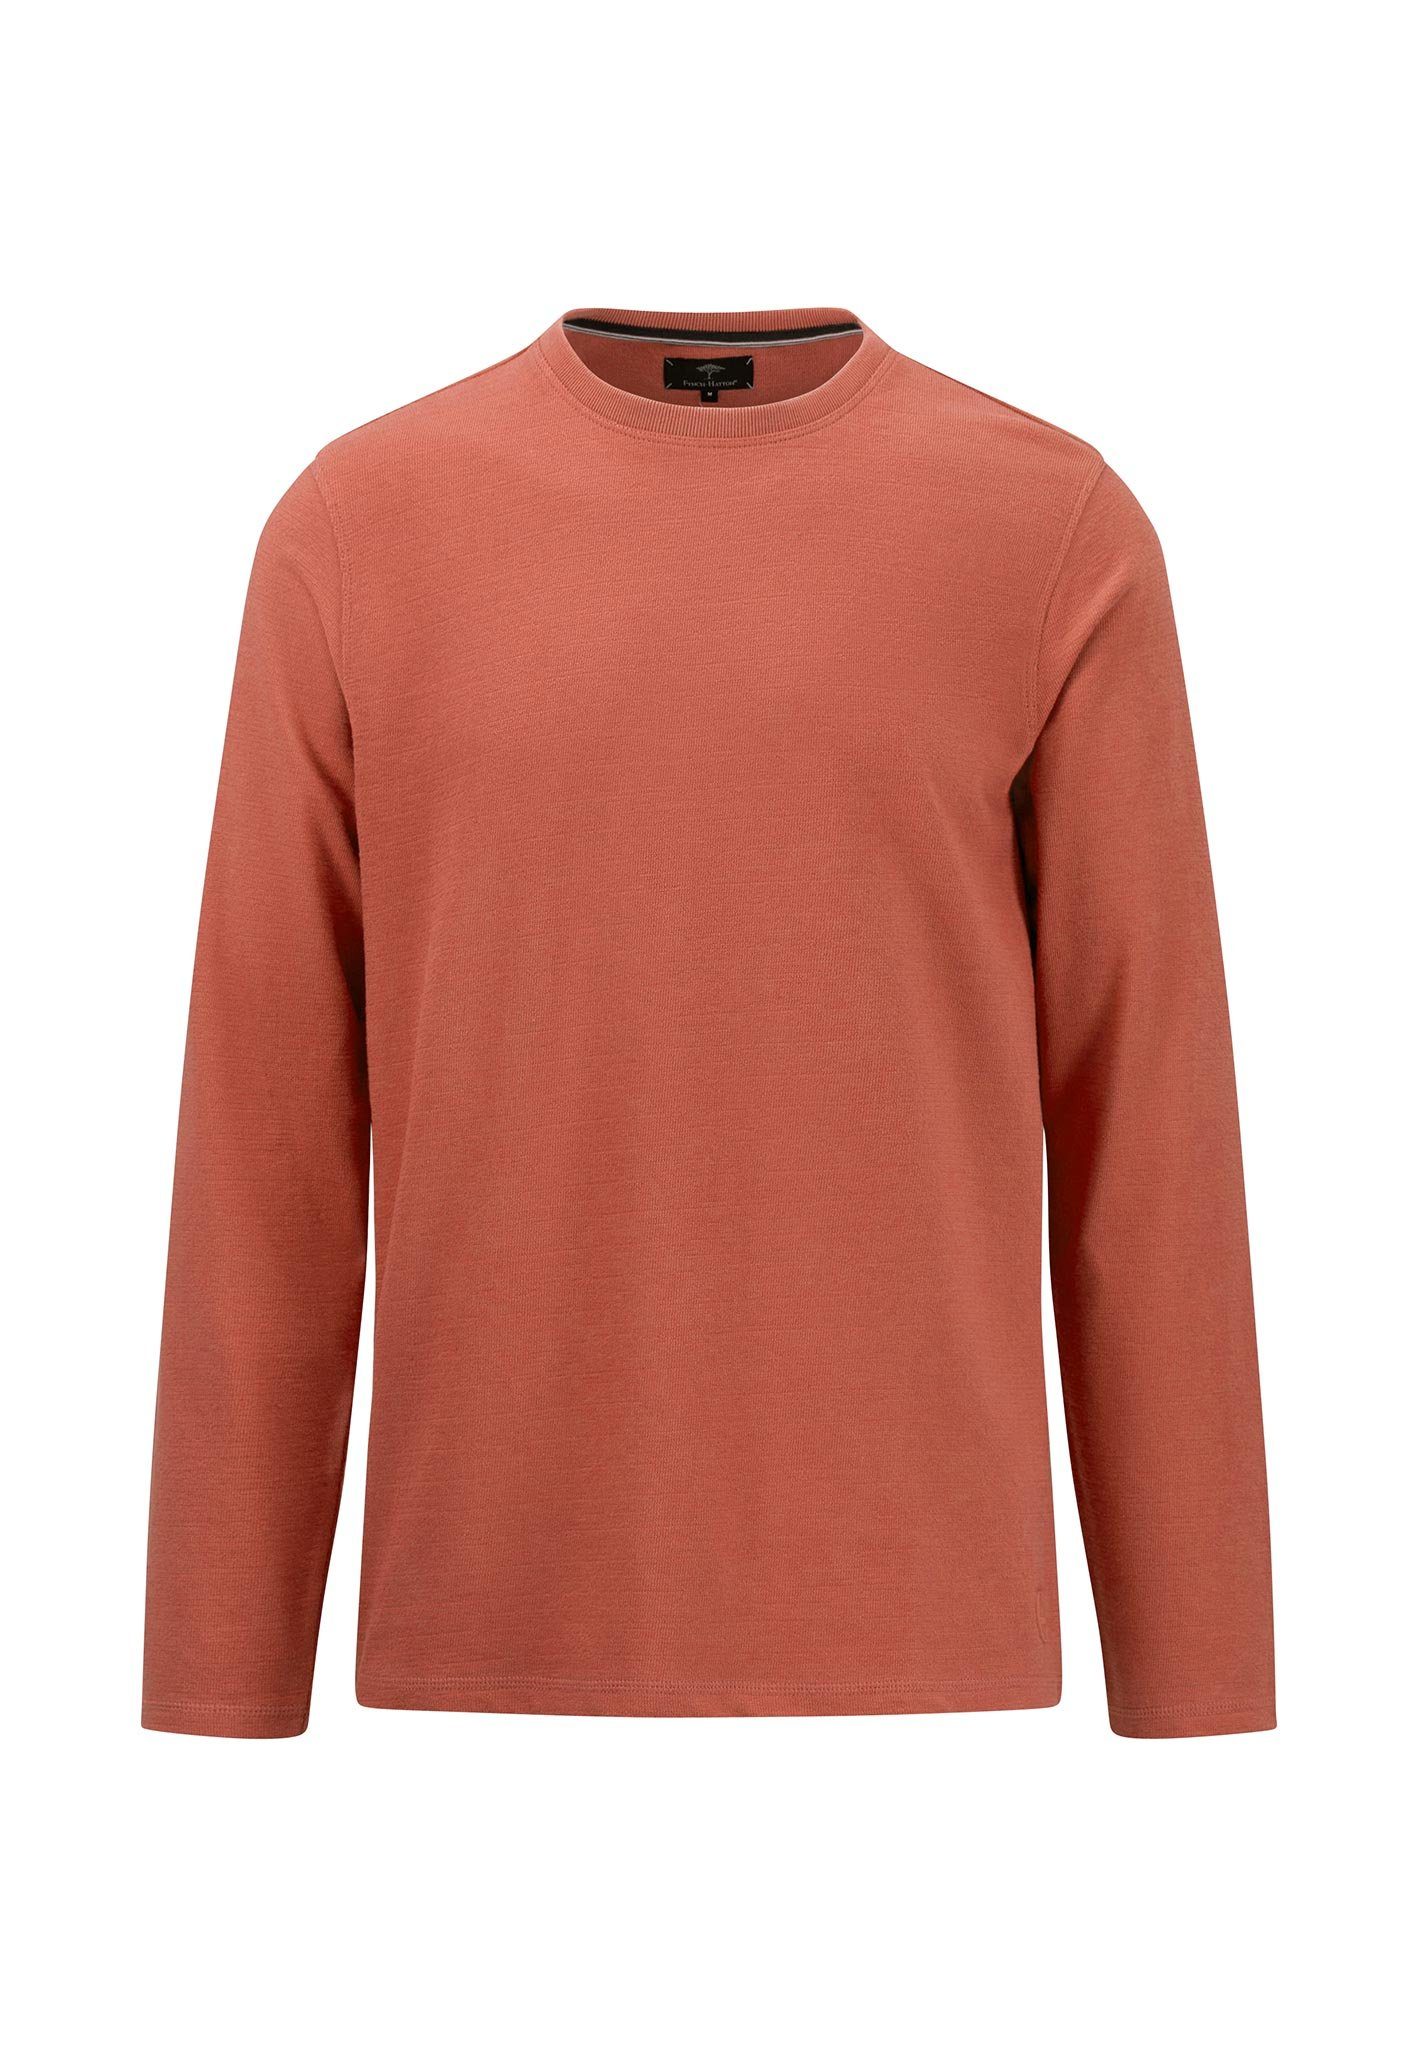 Fynch-Hatton T-Shirts online kaufen | OTTO